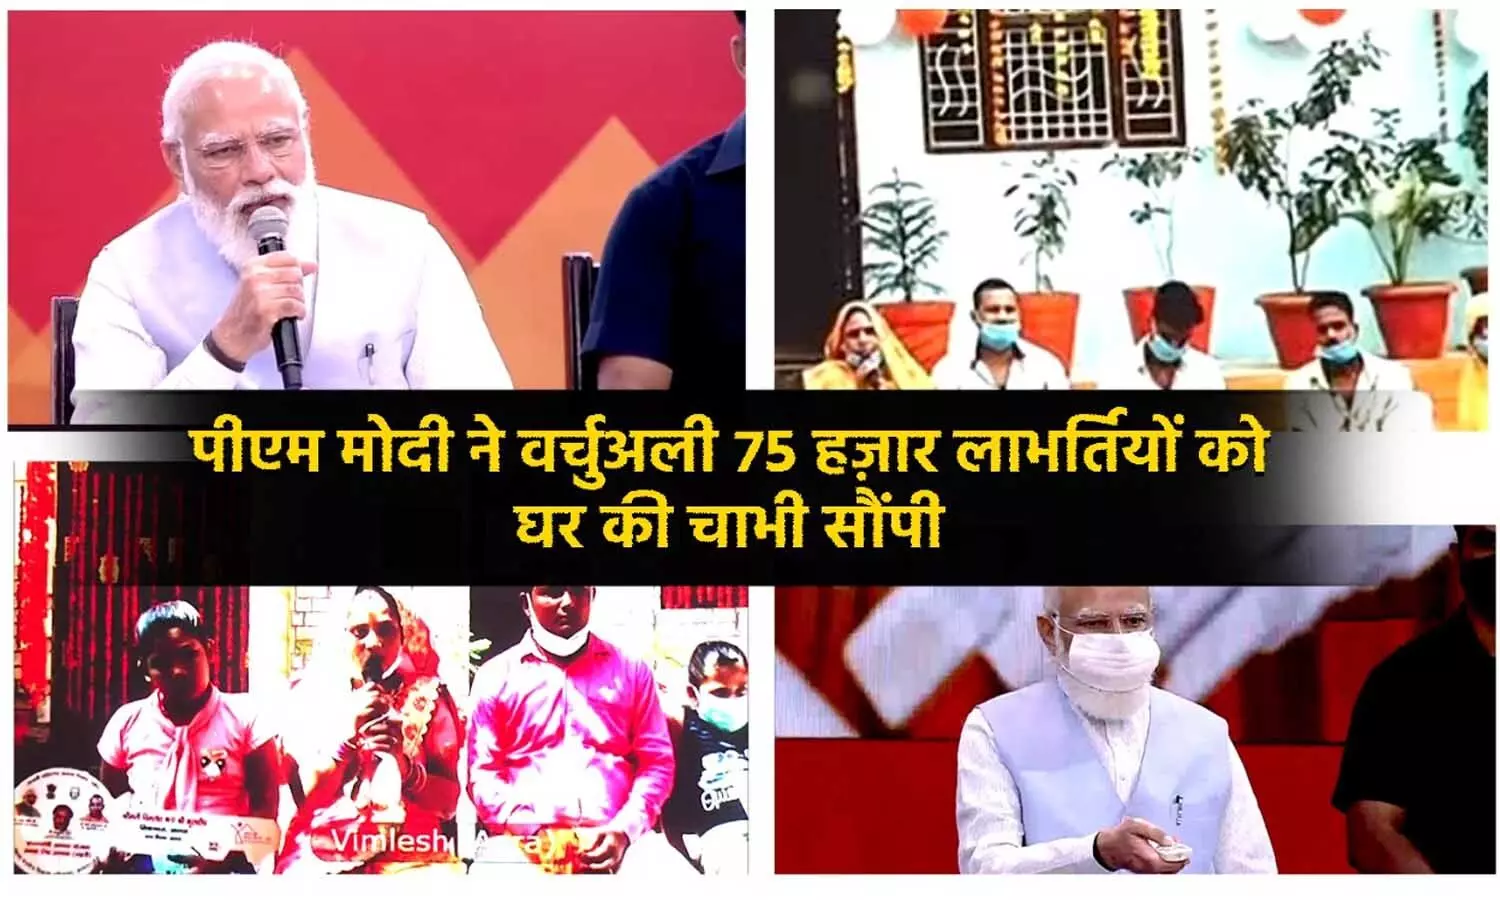 PM Modi Lucknow LIVE: नमस्ते राम जानकी जी! पीएम मोदी कर रहे संवाद, थोड़ी देर में UP को देंगे करोड़ों की सौगात